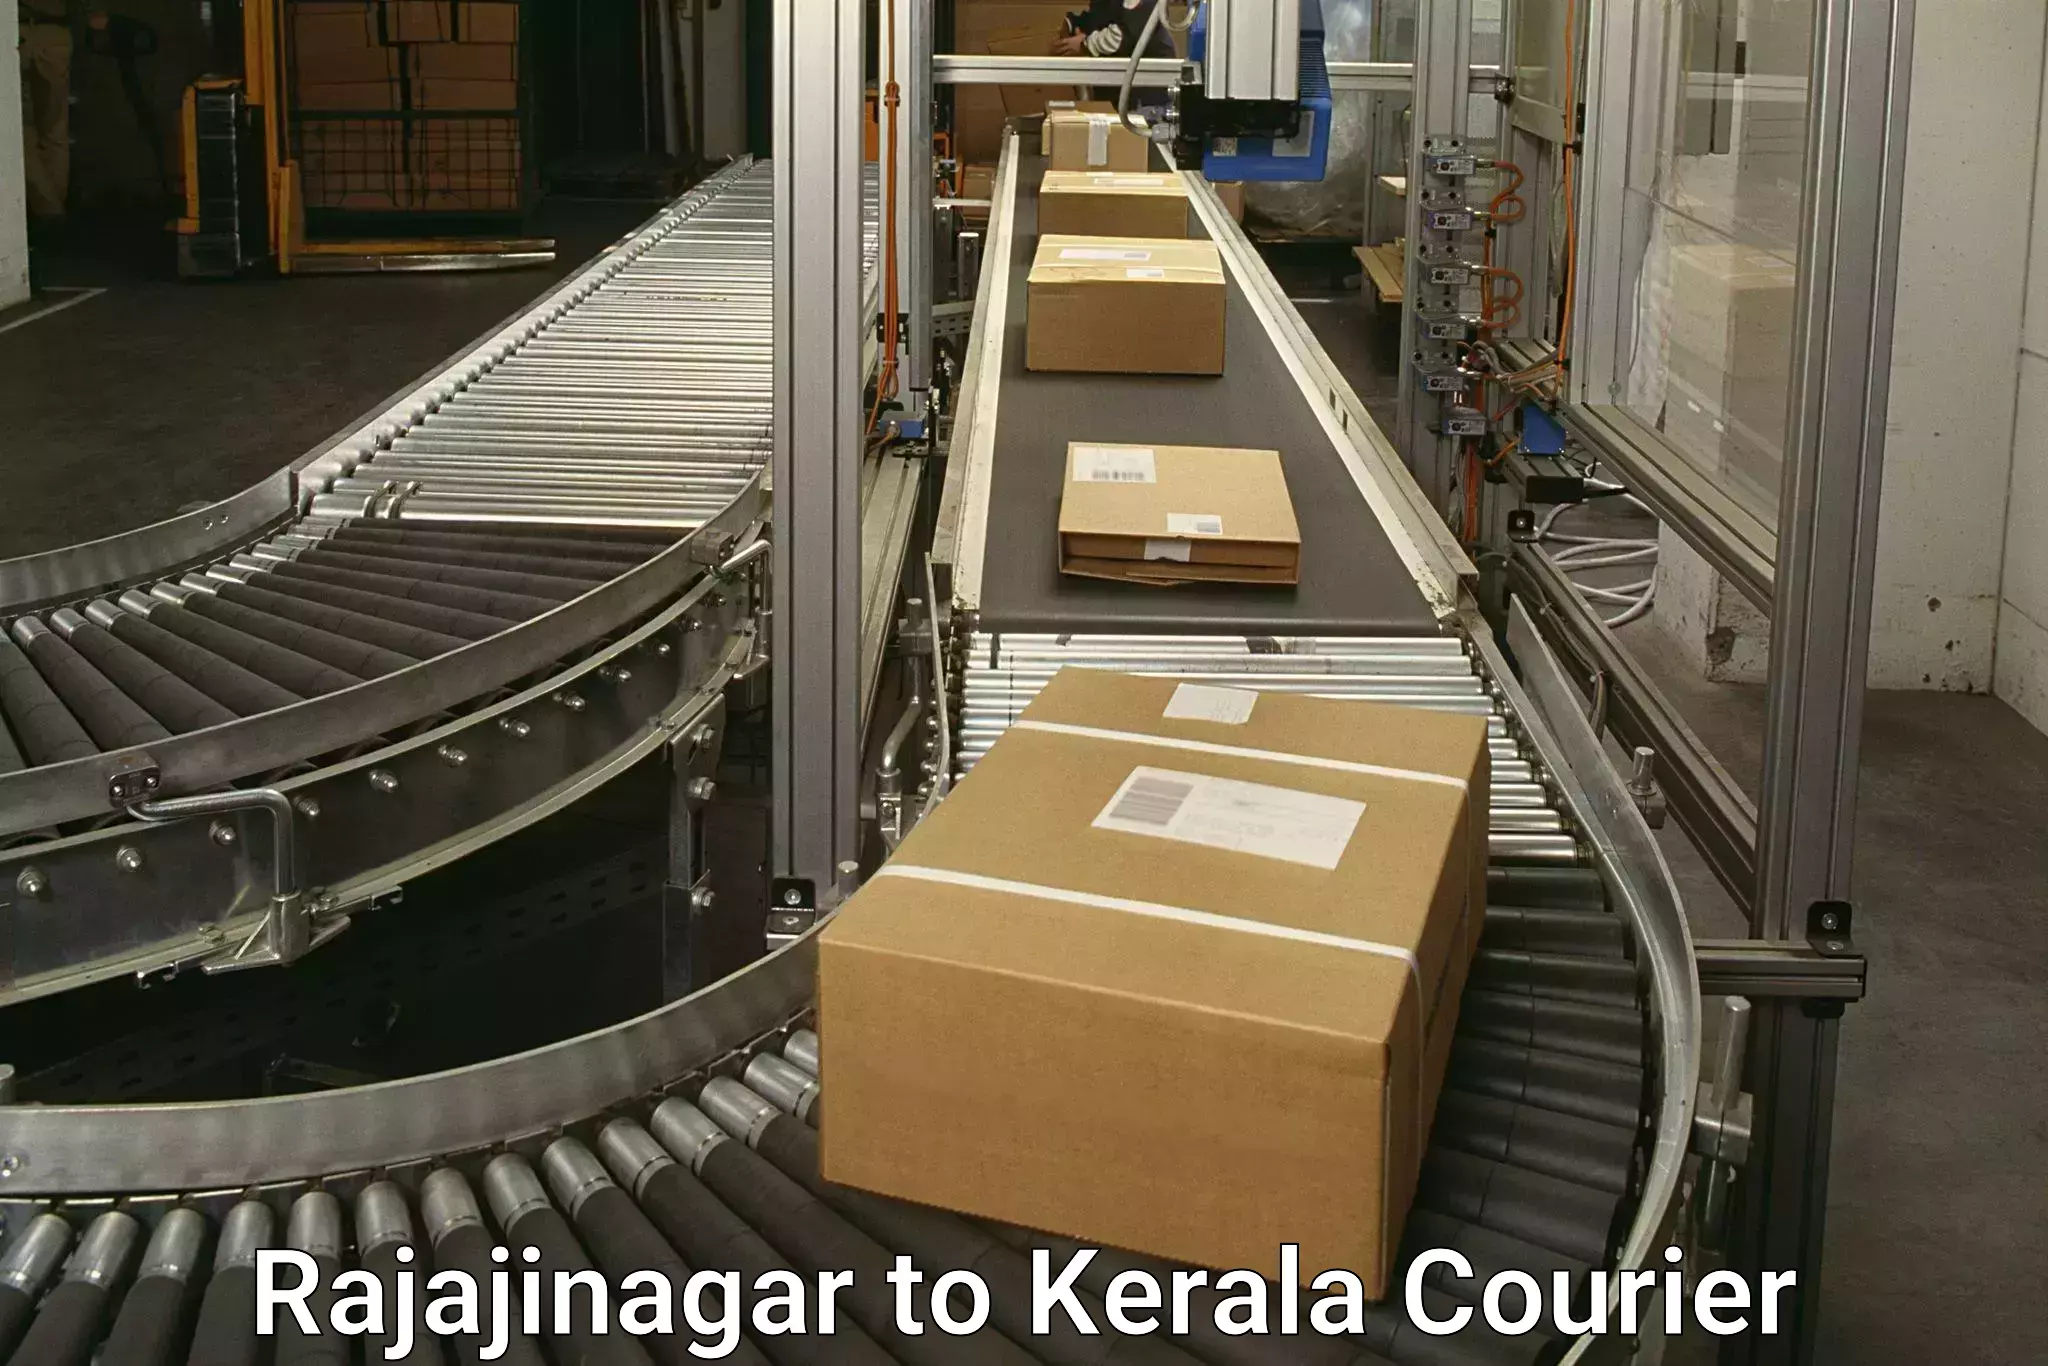 International courier networks Rajajinagar to Adimali